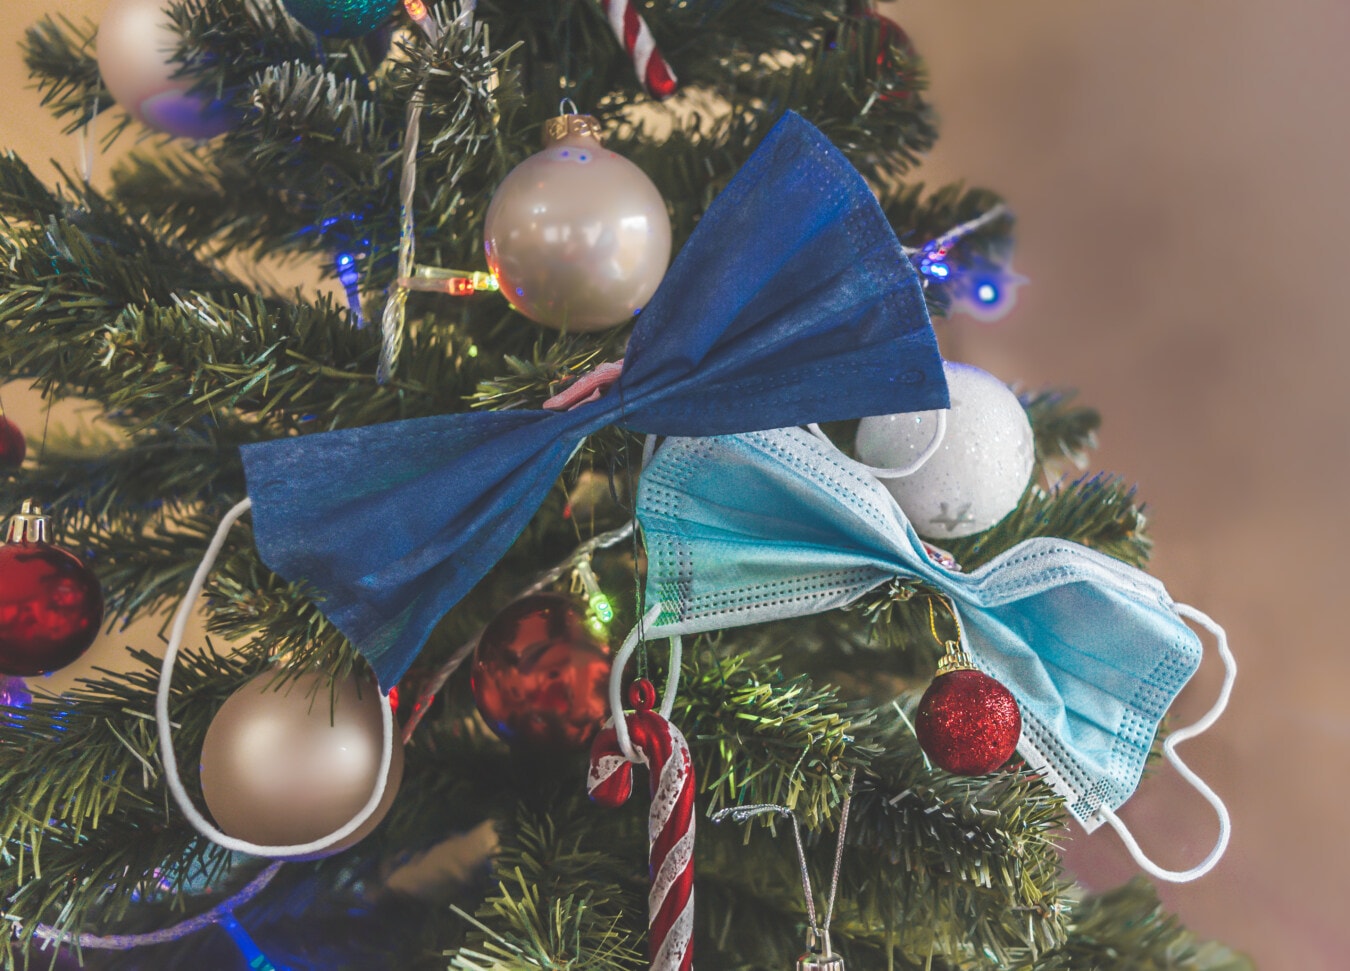 Gesichtsmaske, Coronavirus, Weihnachtsbaum, Neujahr, Ornament, Weihnachten, Dekoration, glänzend, Feiertag, hängende